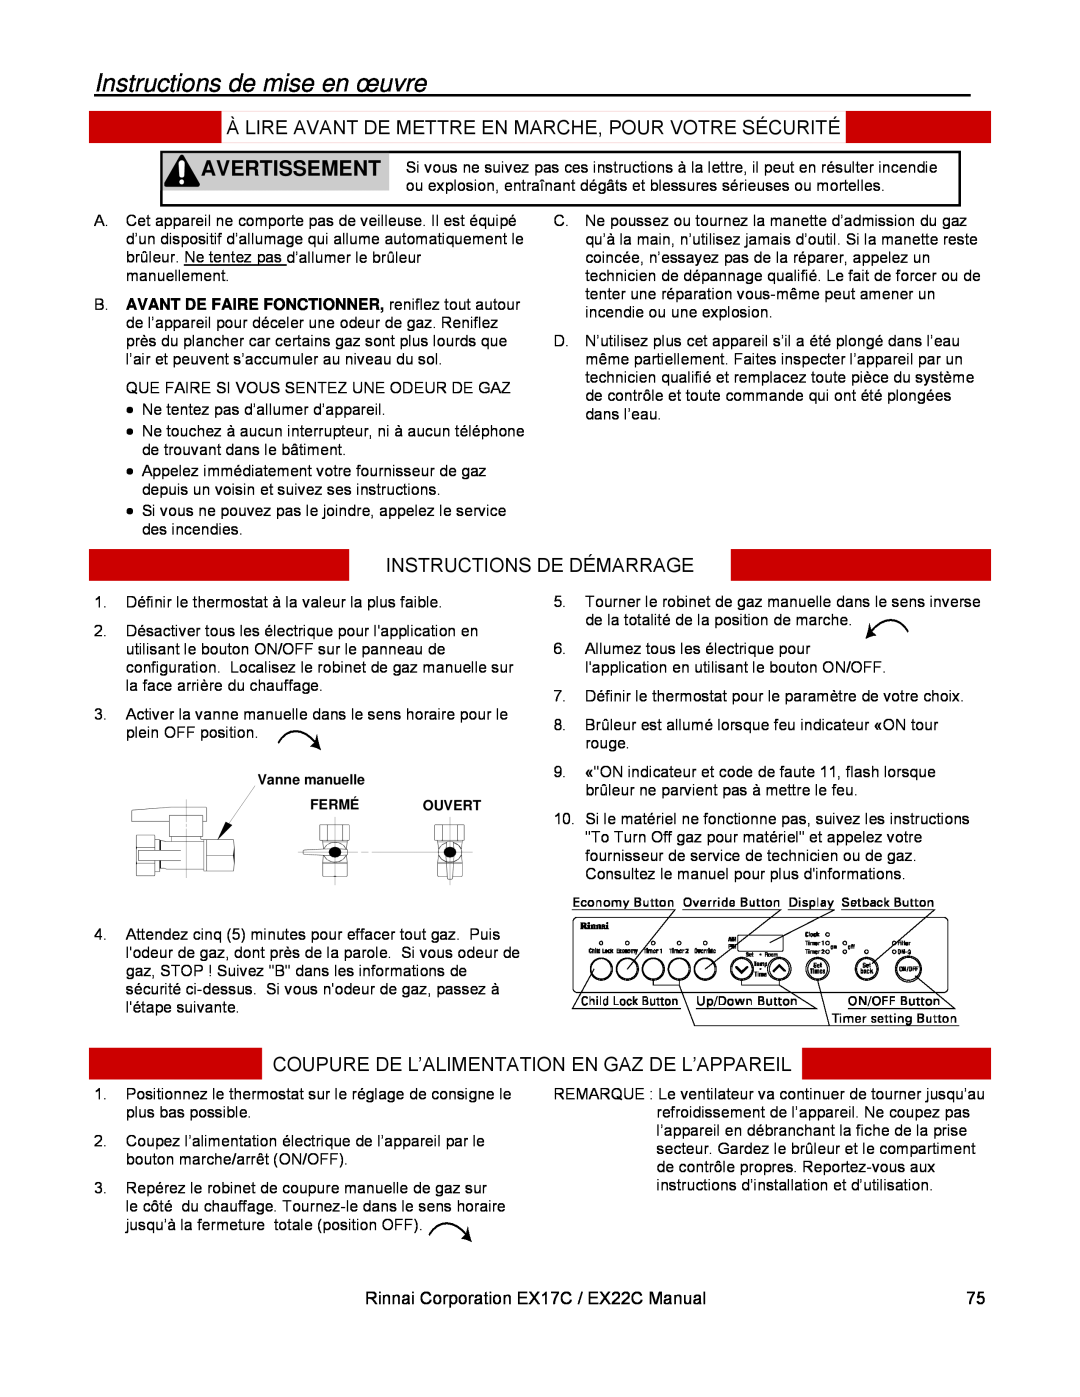 Rinnai EX22C Instructions de mise en œuvre, Instructions De Démarrage, Coupure De L’Alimentation En Gaz De L’Appareil 